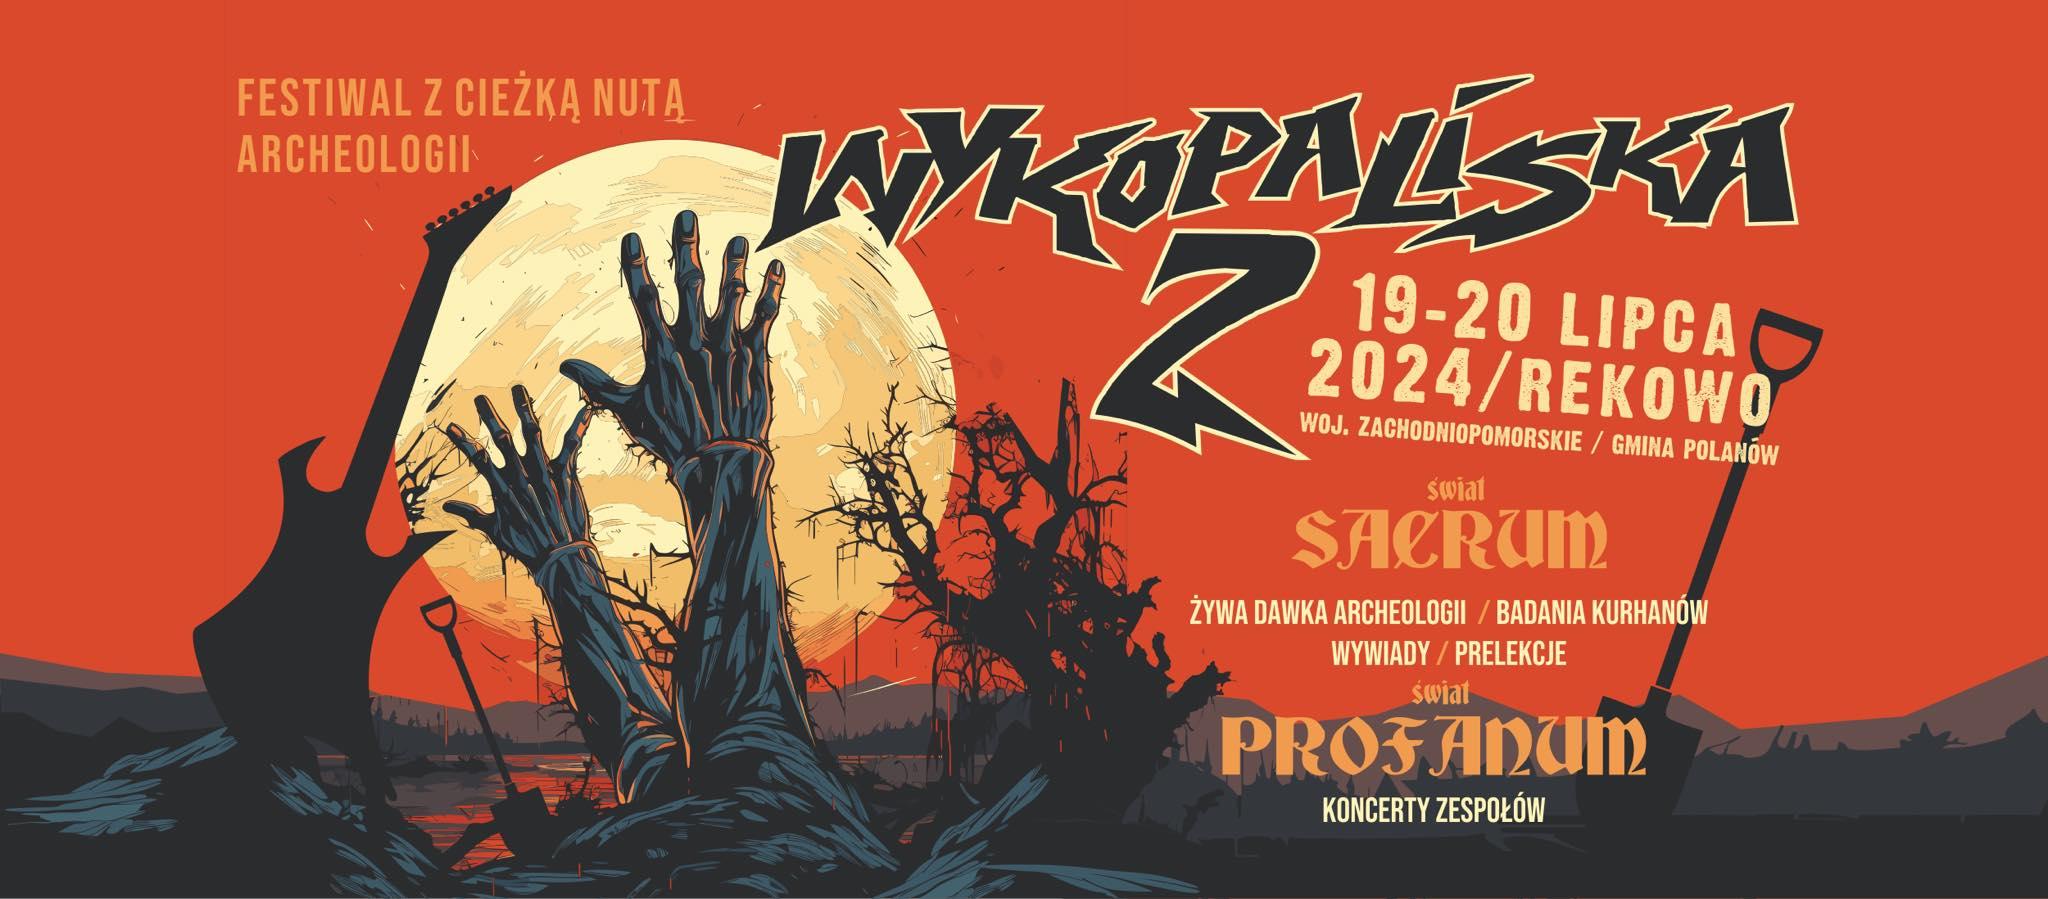 Festiwal WYKOPALISKA Rekowo